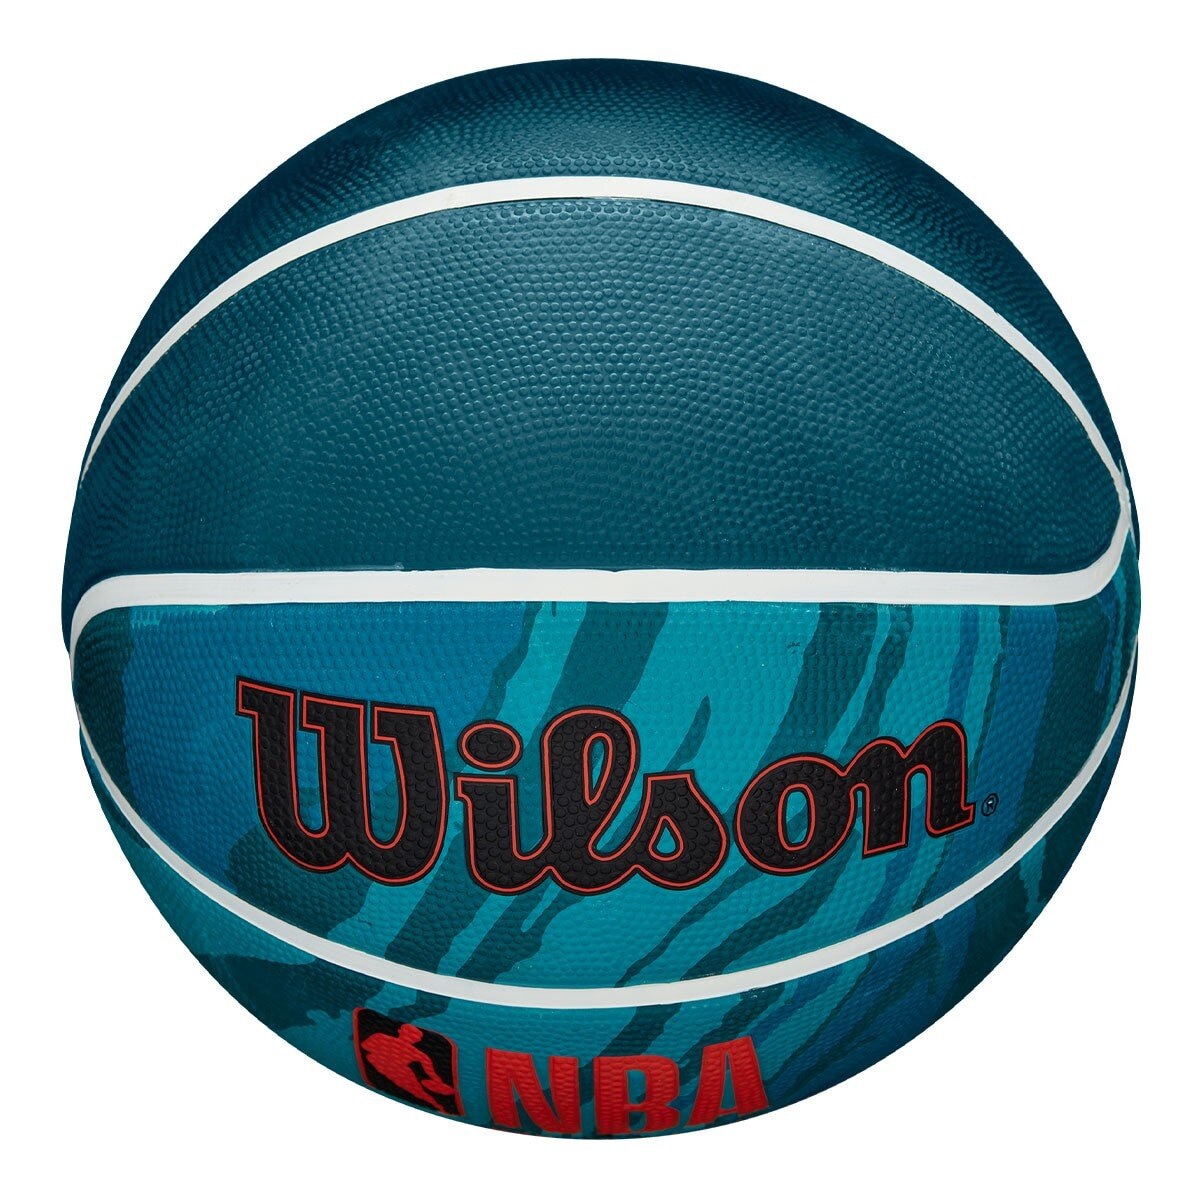 威爾森 橡膠籃球 NBA DRV 系列 PLUS 火紋藍 (7號)